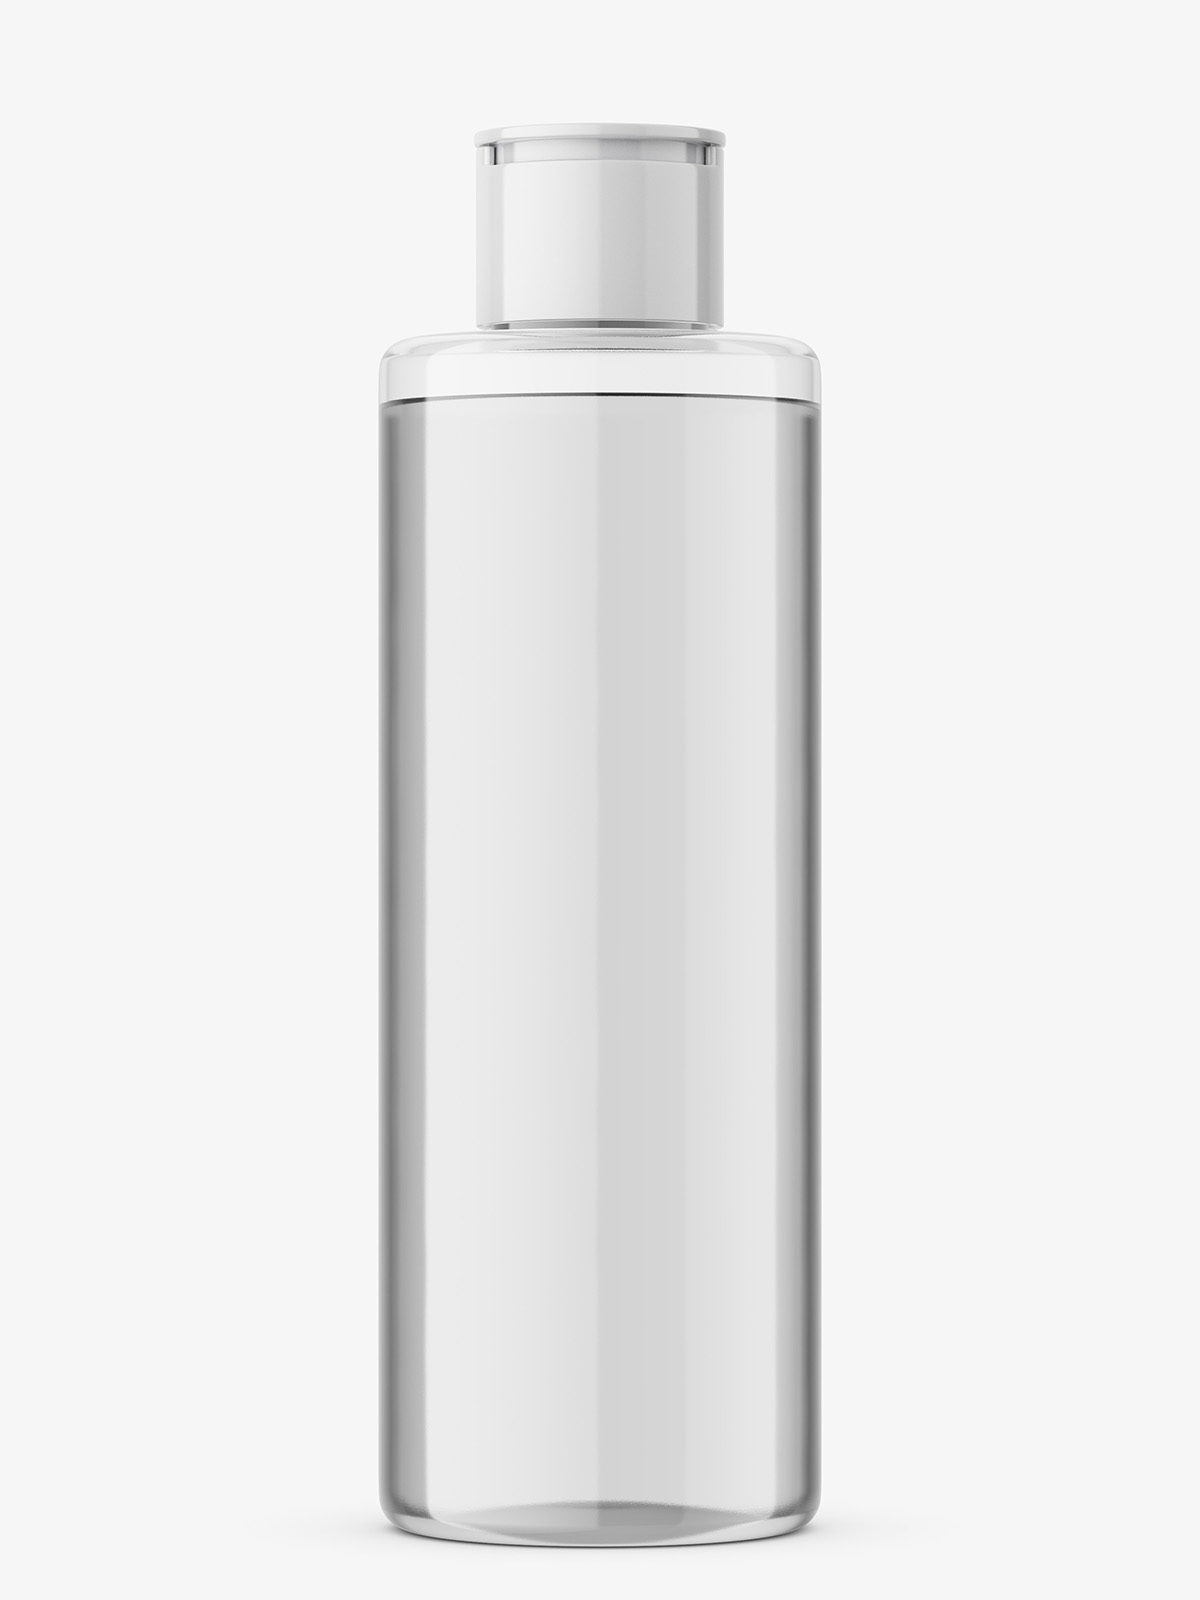 Download Transparent cosmetic oil bottle mockup - Smarty Mockups